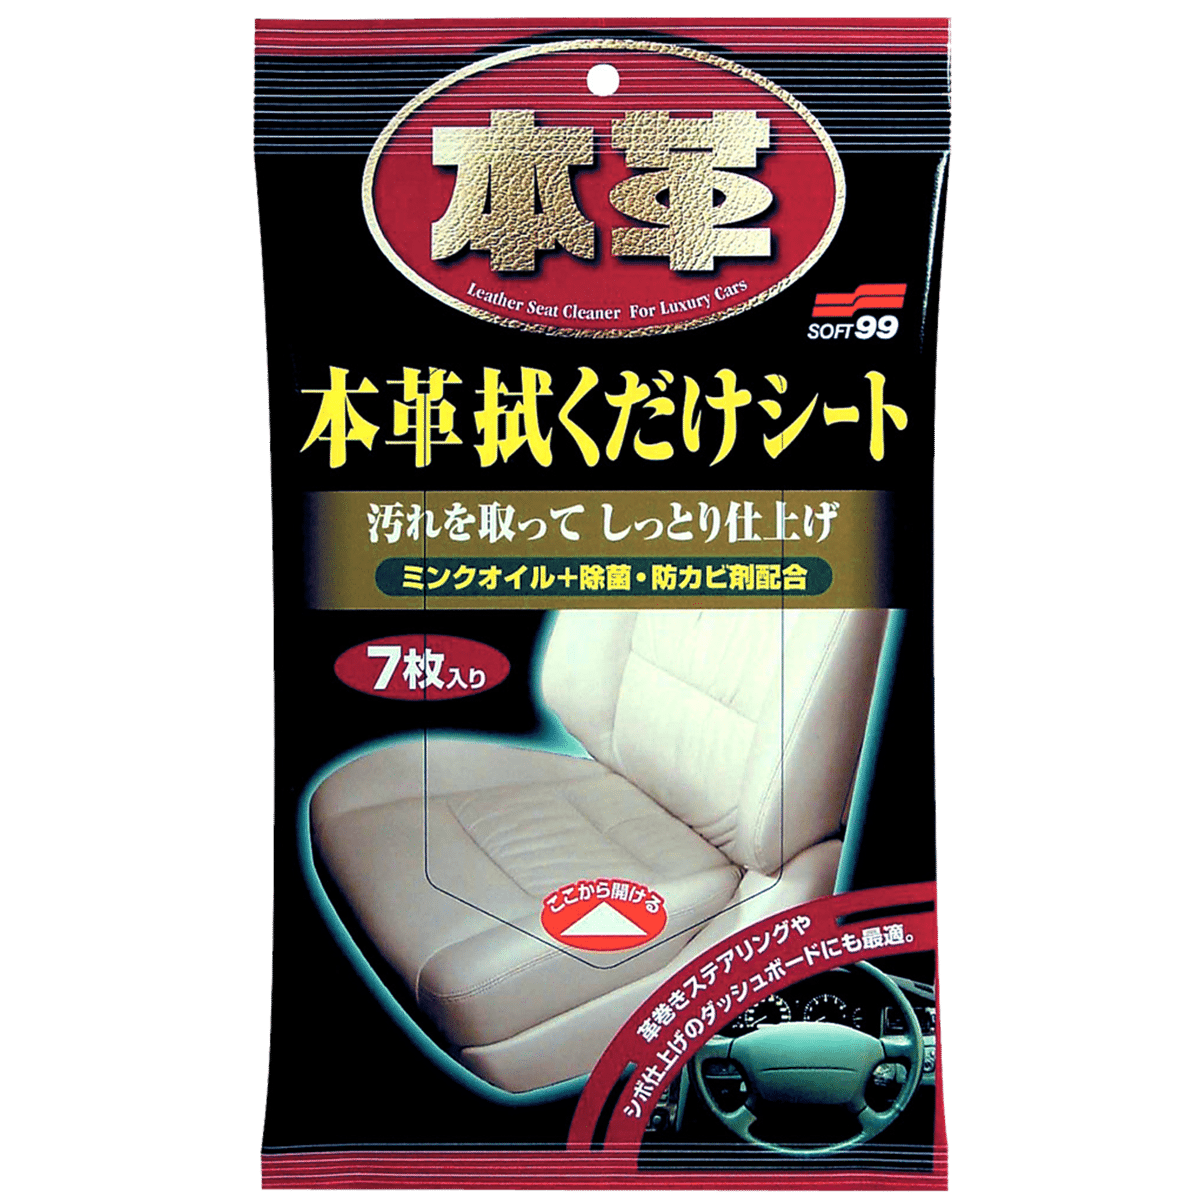 SOFT99 Leather Seat Cleaning Wipe Chusteczki do Czyszczenia Skórzanej Tapicerki Samochodowej 7szt